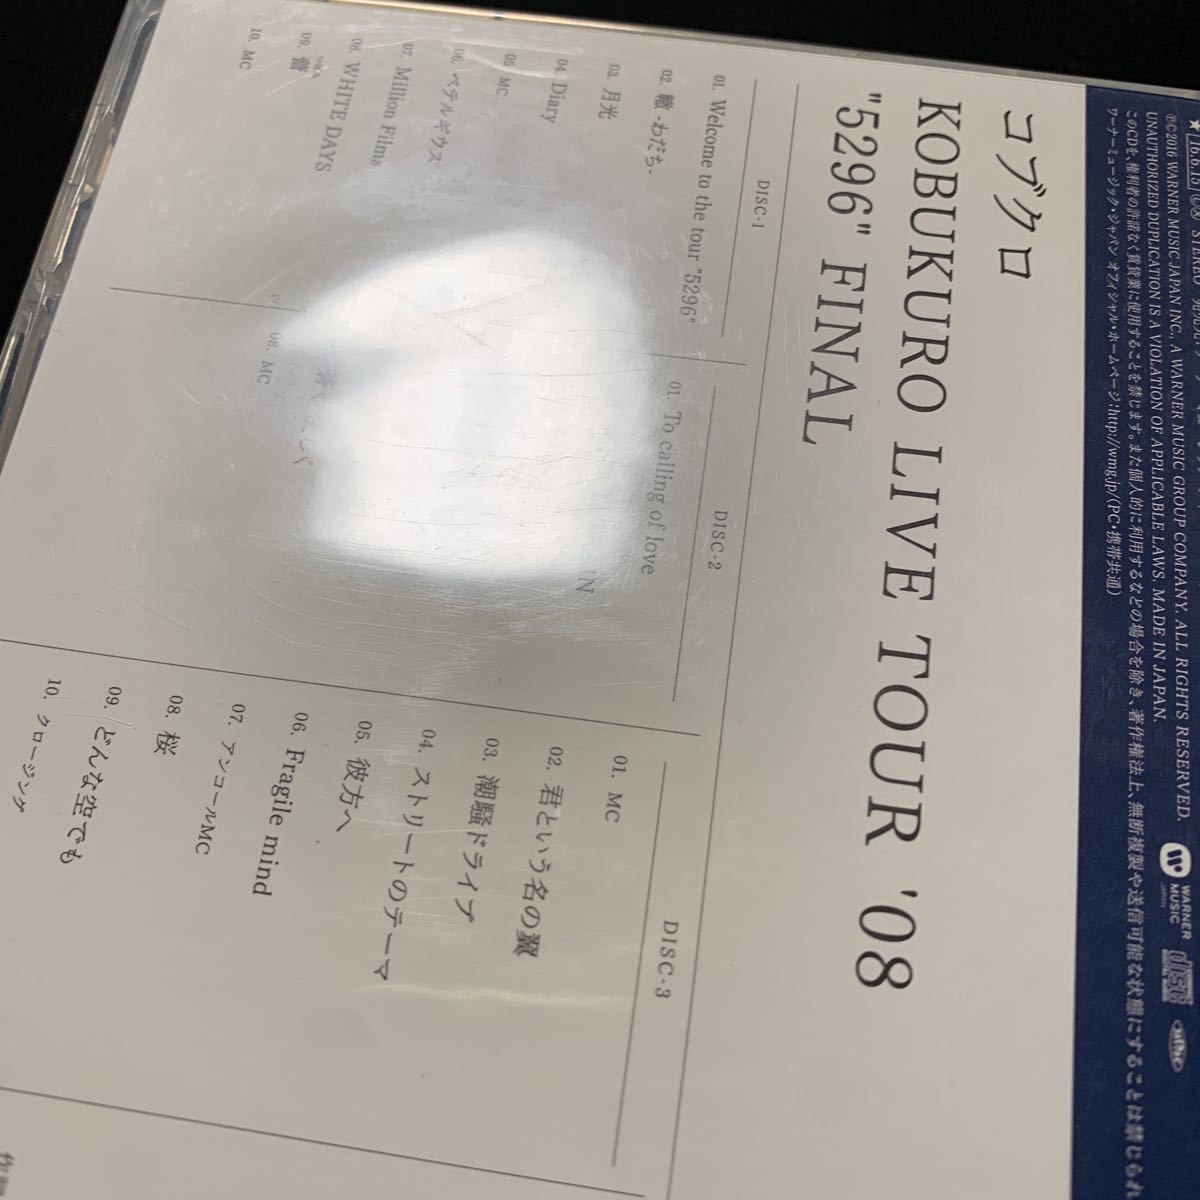 コブクロ 5296 ツアー FINAL ライブ音源 CD3枚組_画像7